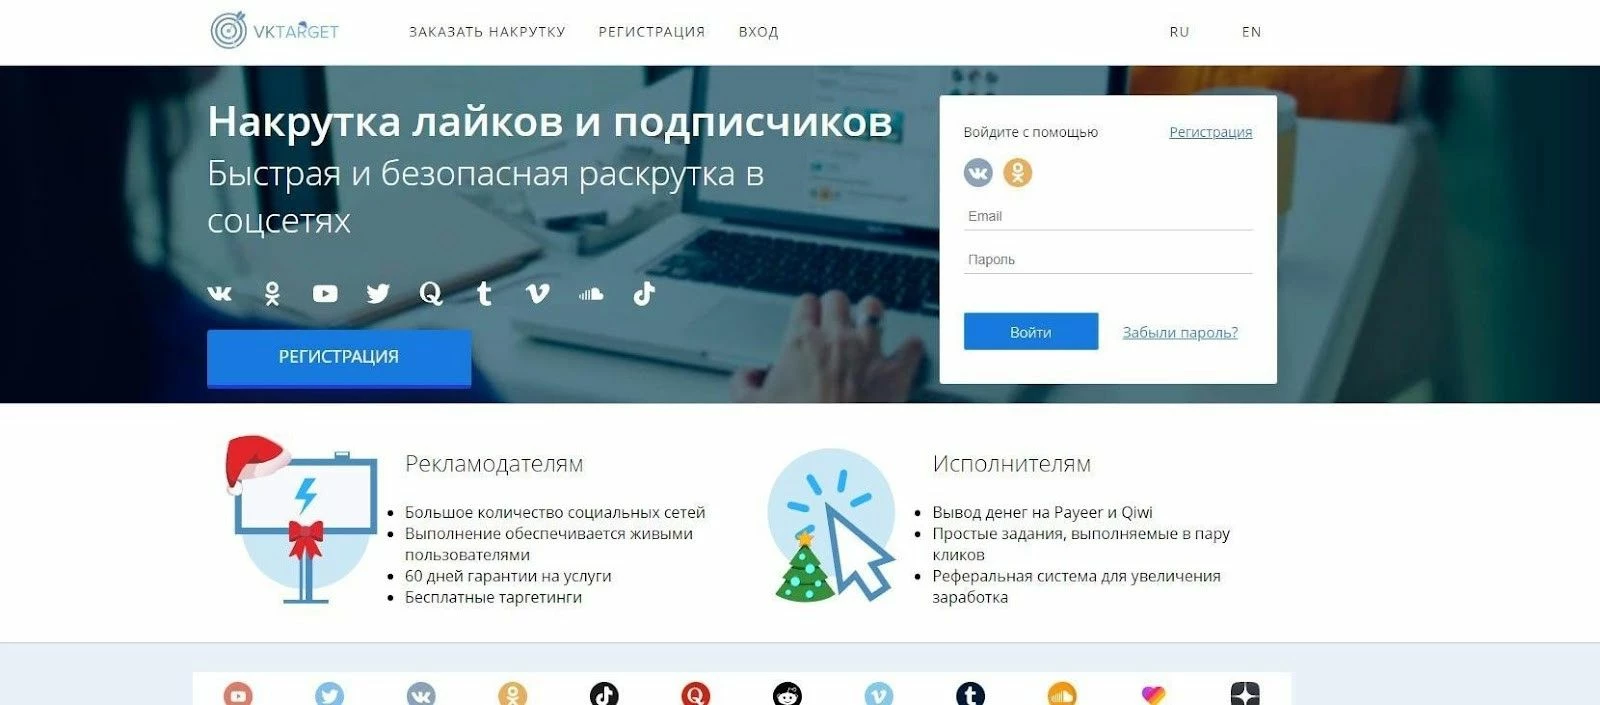 Vktarget.ru - заработок на просмотре рекламы в соцсетях